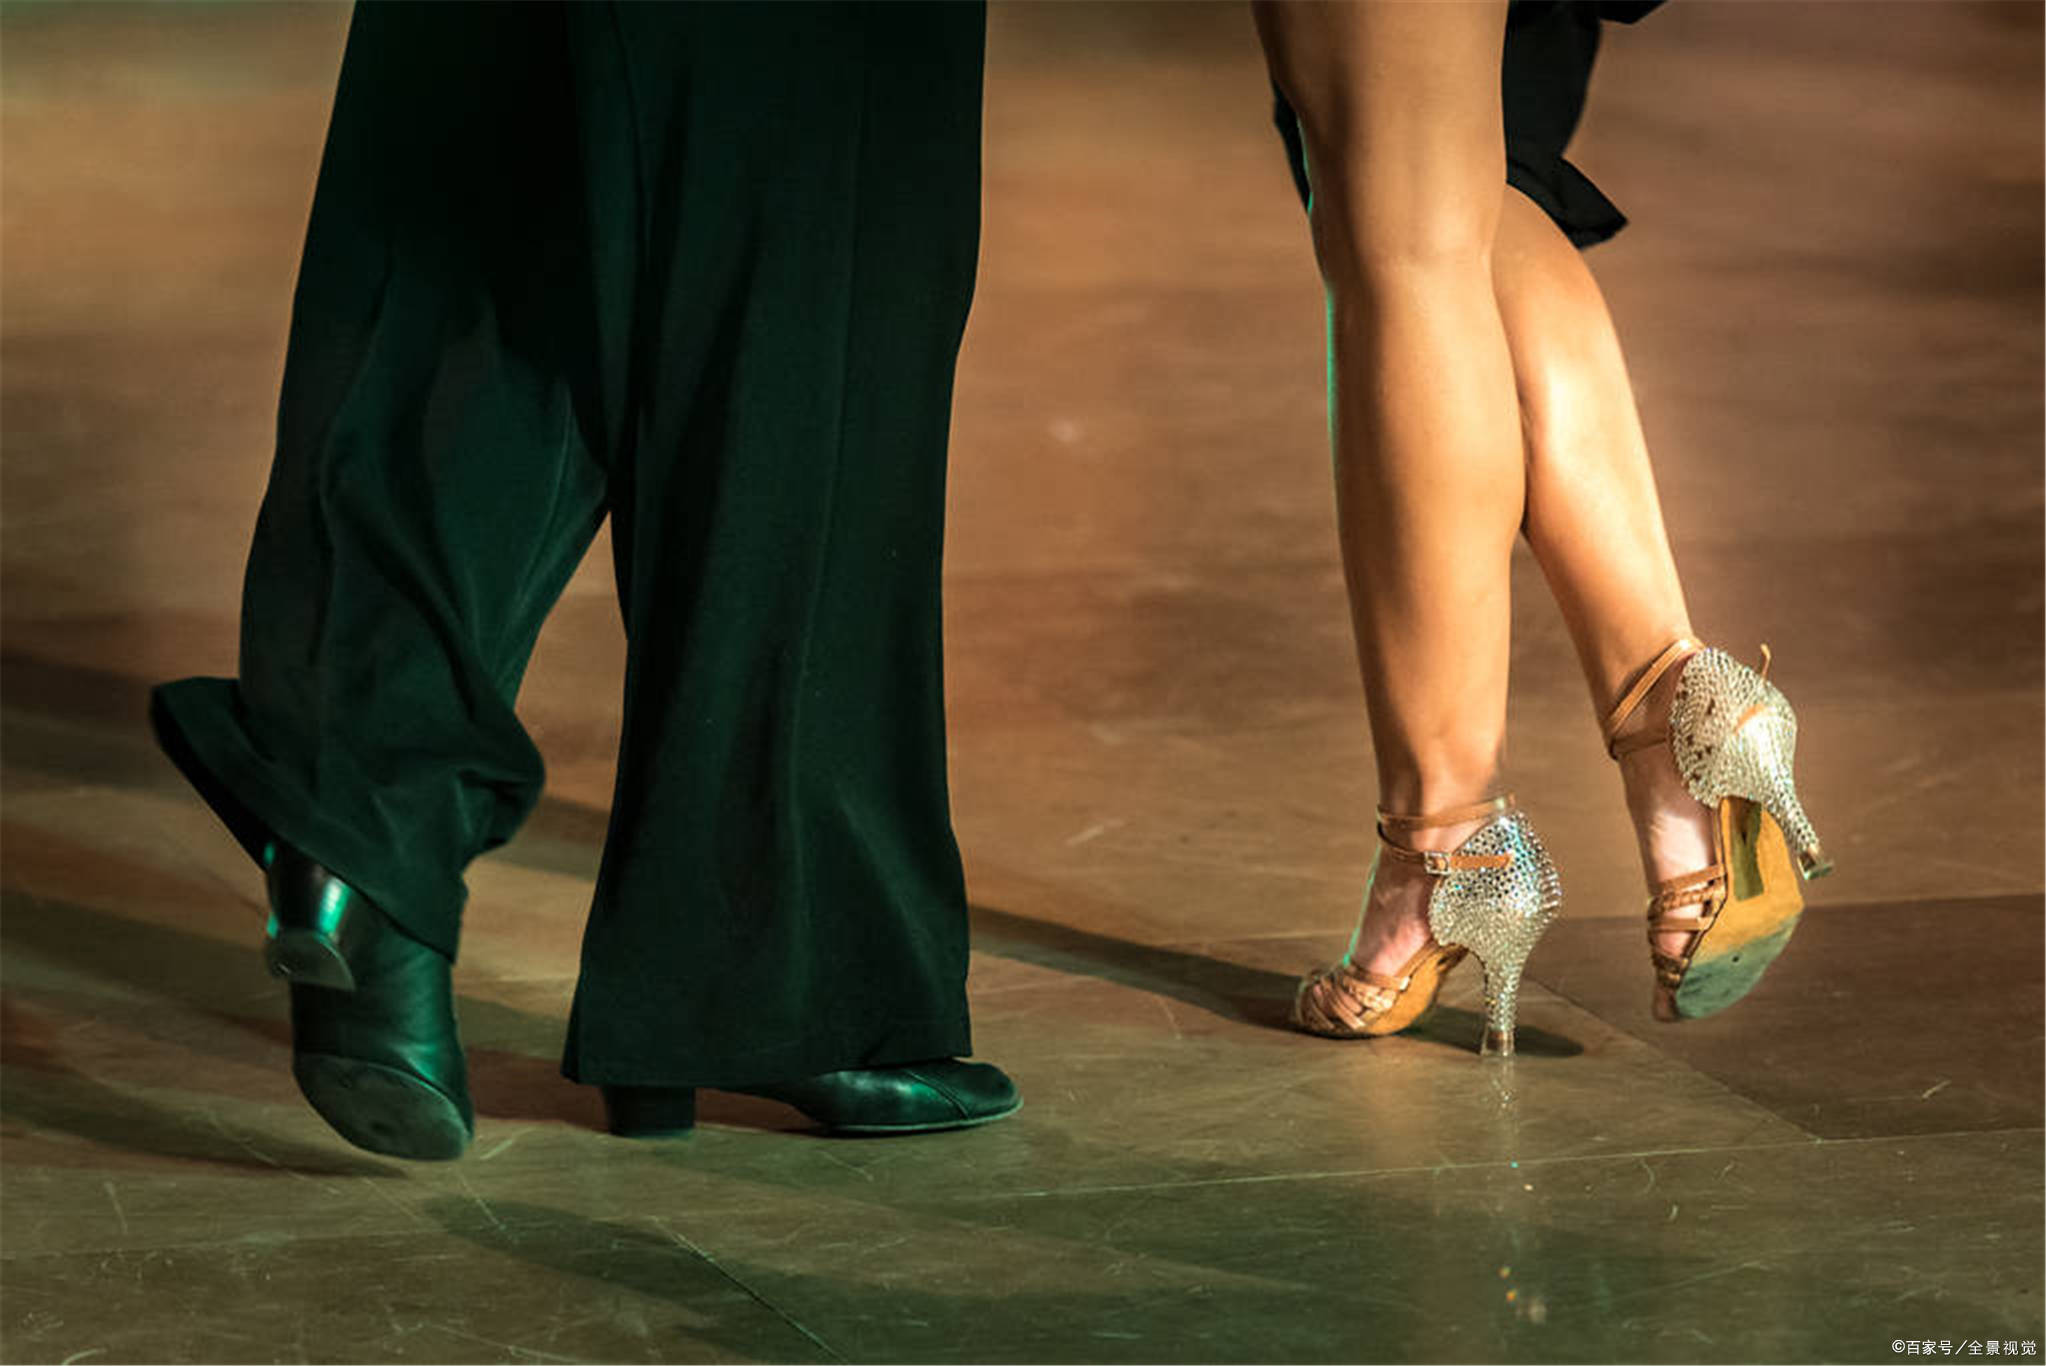 原创拉丁舞鞋:台上一分钟,台下十年功,拉丁舞者的不容易需要好的舞鞋